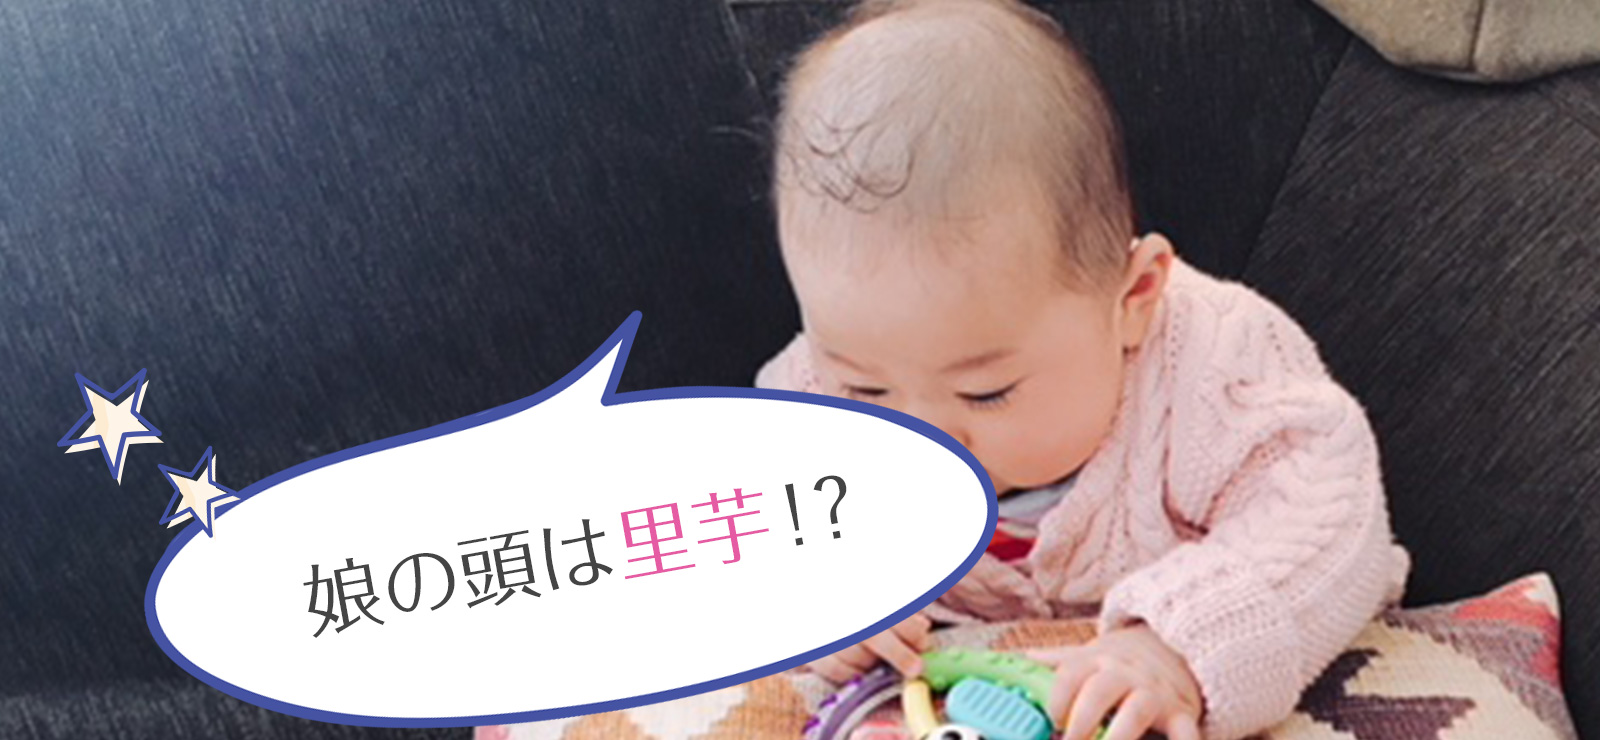 赤ちゃんの抜け毛による薄毛 娘が 里芋 と呼ばれた 二コッペブログ ママの働き方と美容